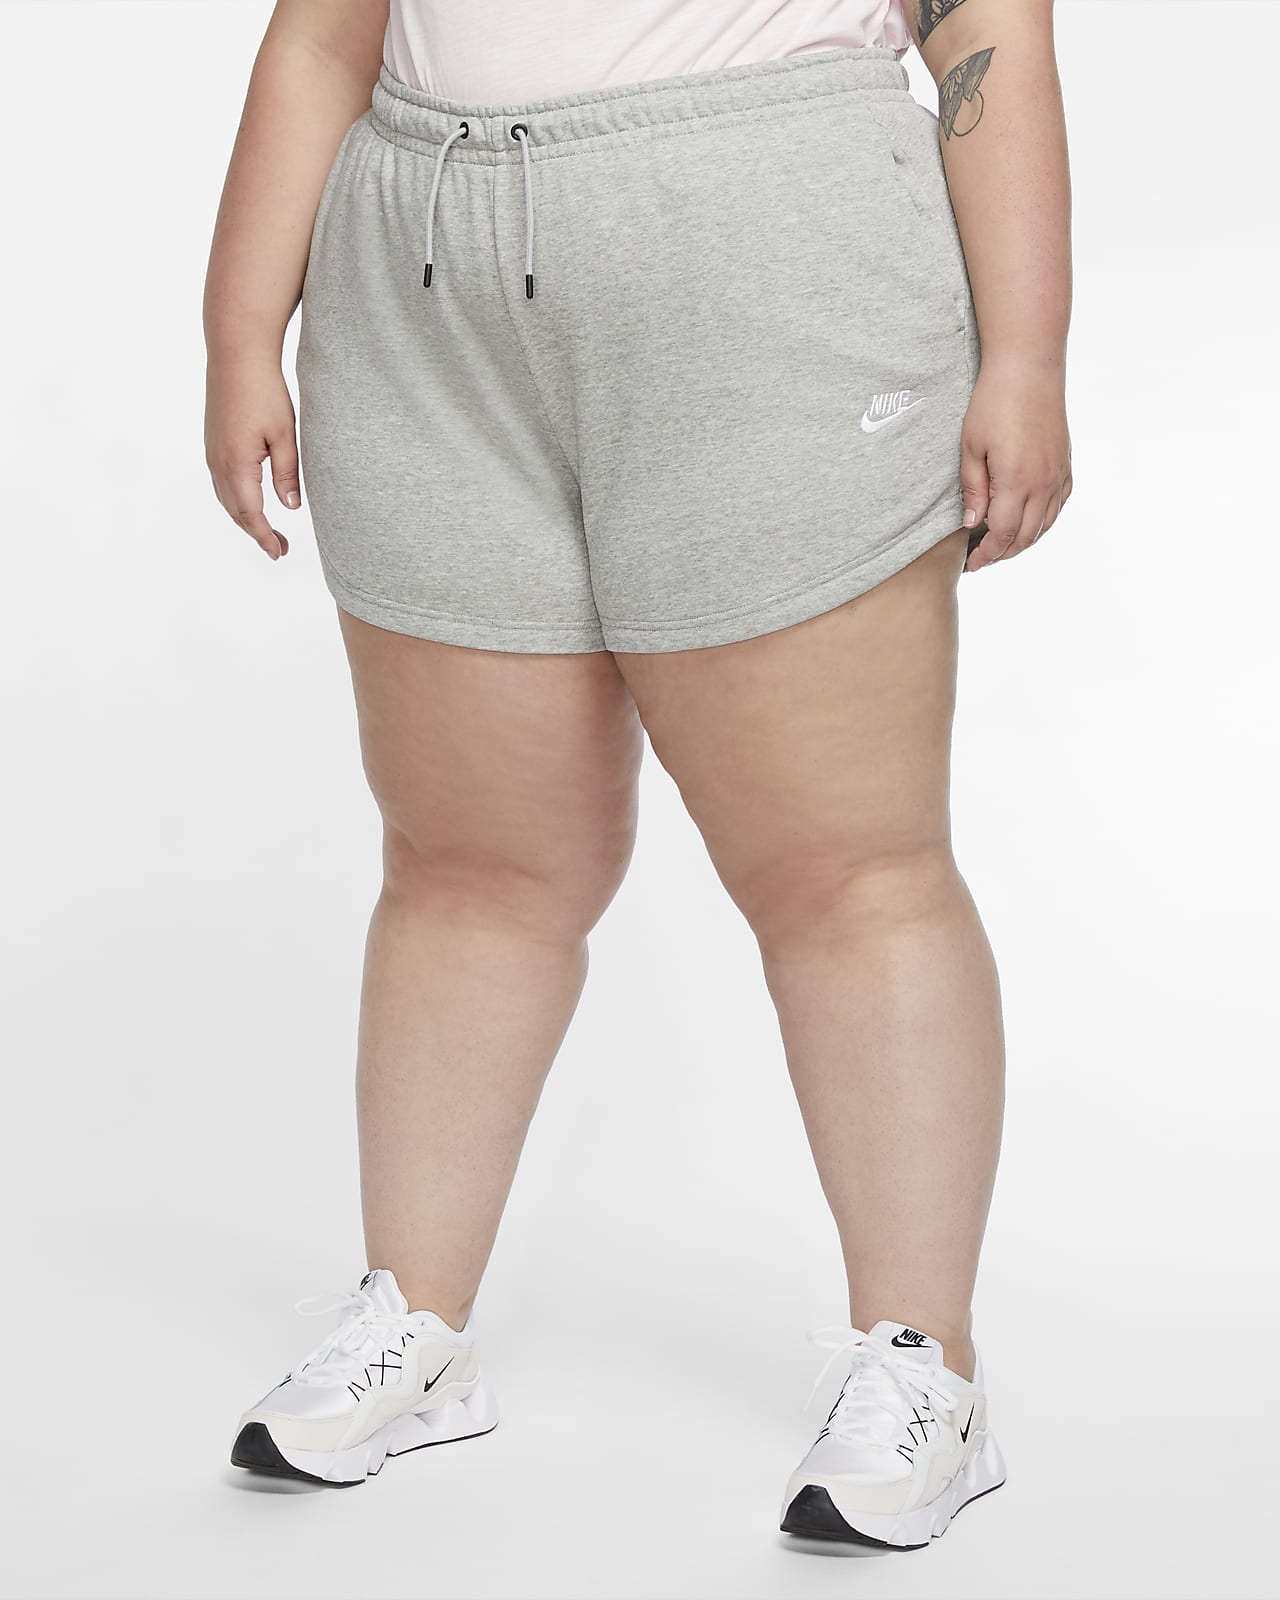 Nike Sportswear Women's Shorts (Plus Size)